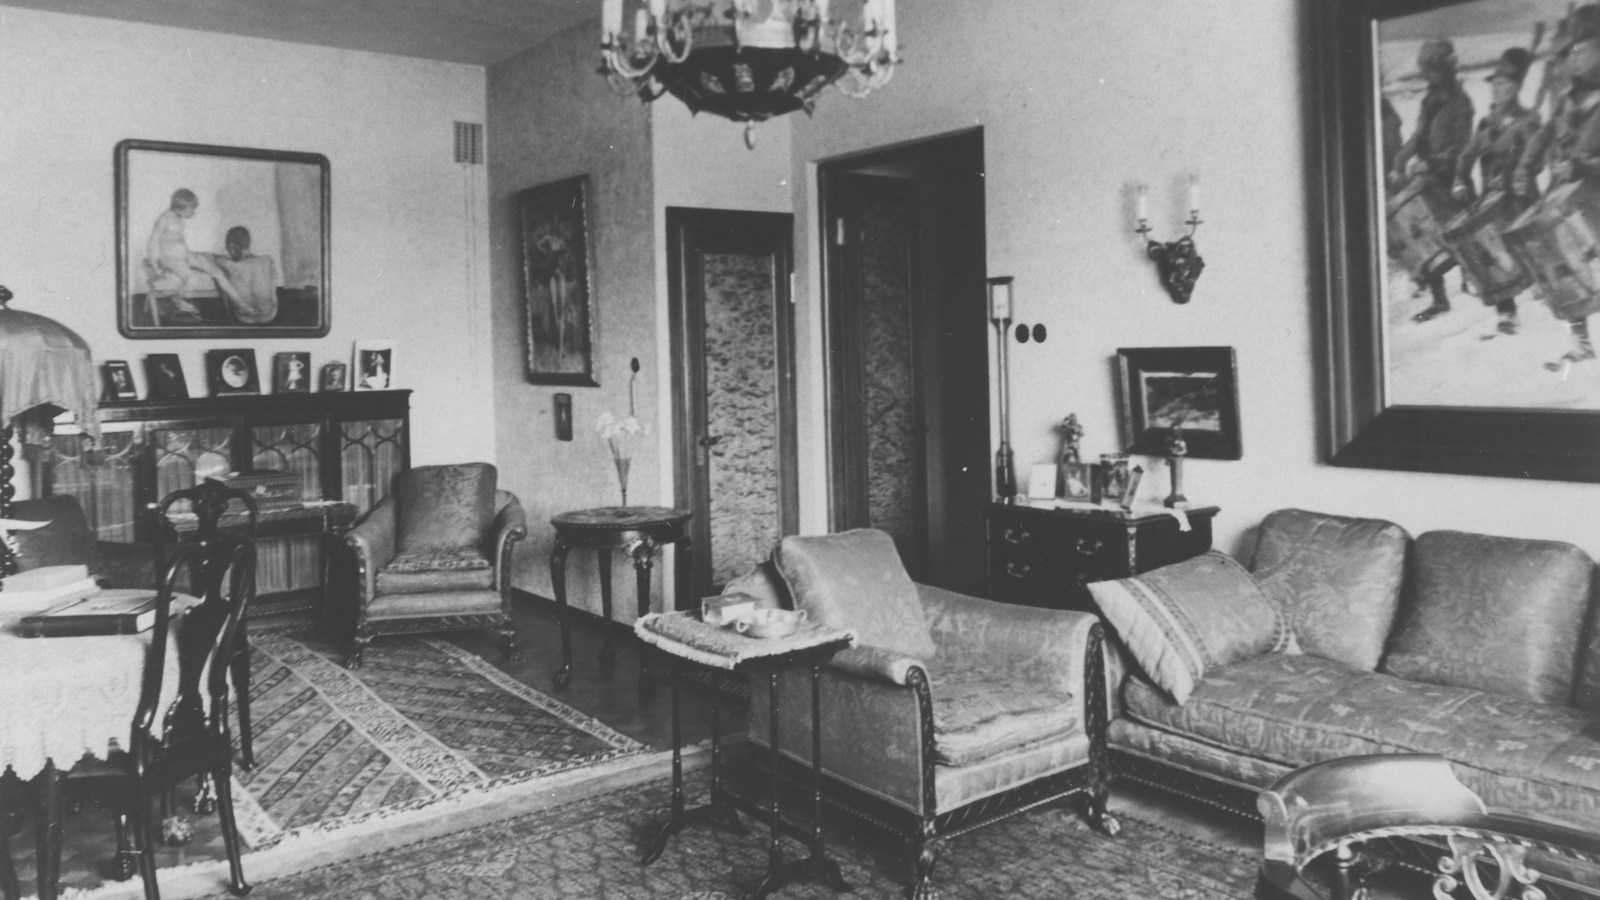 Kuvassa on Gösta Serlachiuksen työhuone, jossa on antiikkinen kalusto ja sohvaryhmä kuvan oikeassa reunassa.  Kuva on musta-valkoinen.